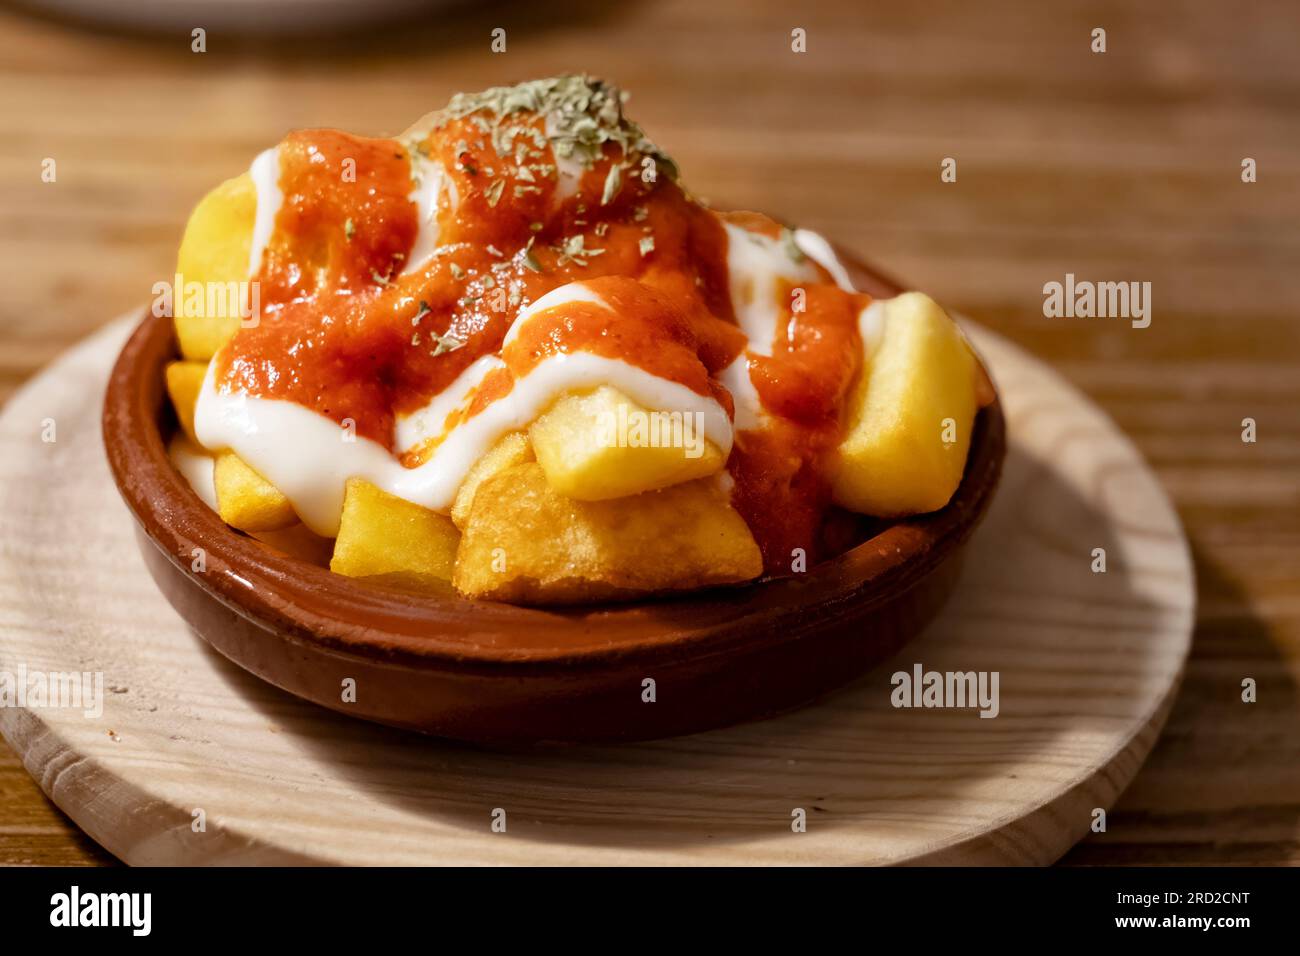 Eine einzelne Tapas-Portion Kartoffel-Bravas oder kleine Kartoffelchips, serviert in einer Schüssel mit Tomatensauce und Mayonnaise-Dressing in einer Tapas-Bar. Stockfoto